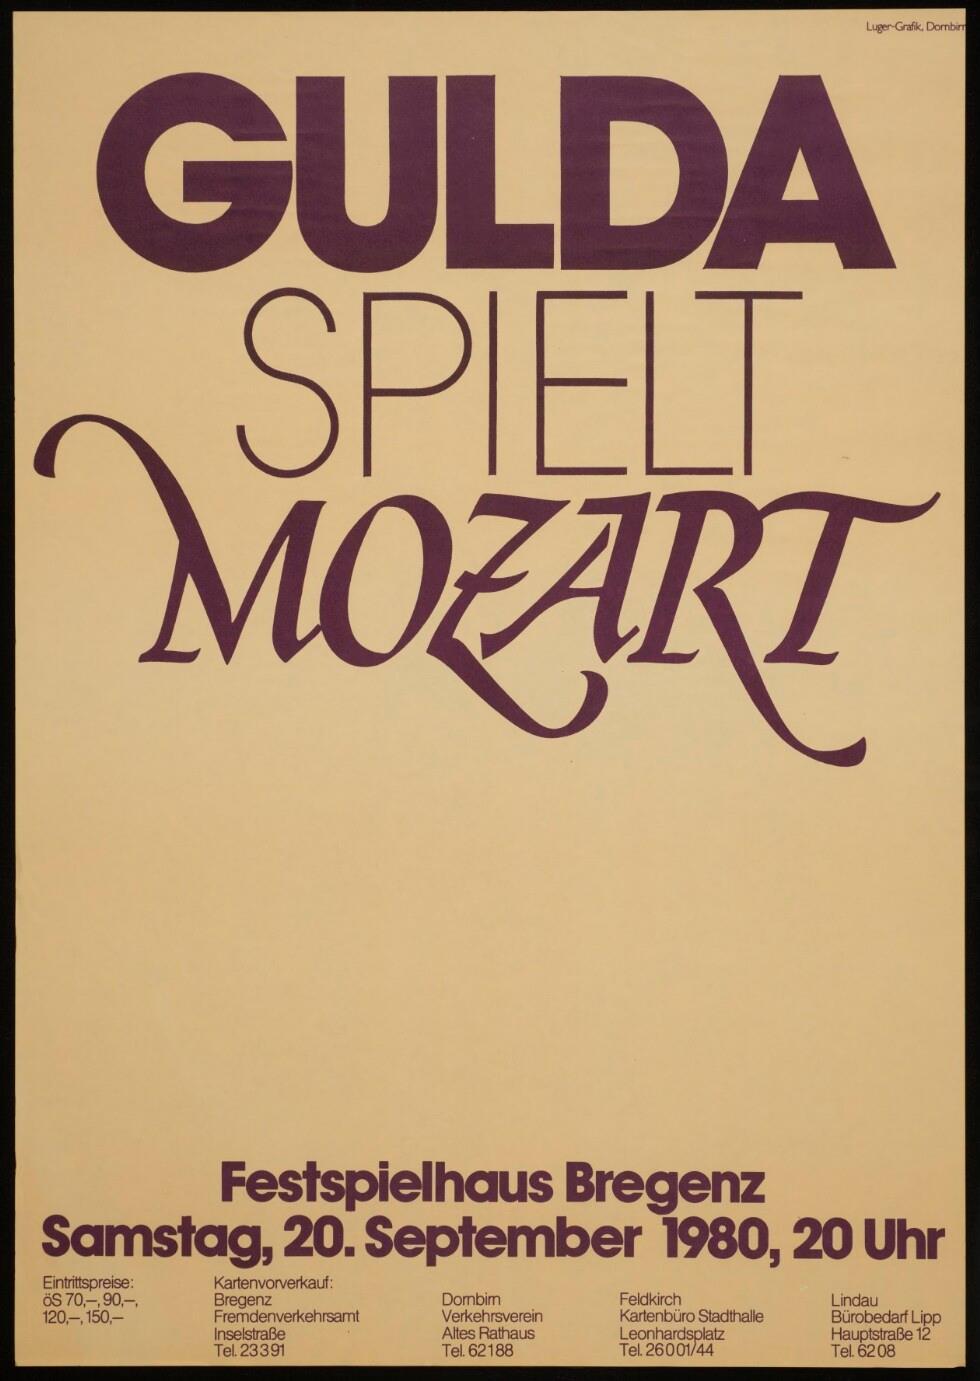 Gulda spielt Mozart